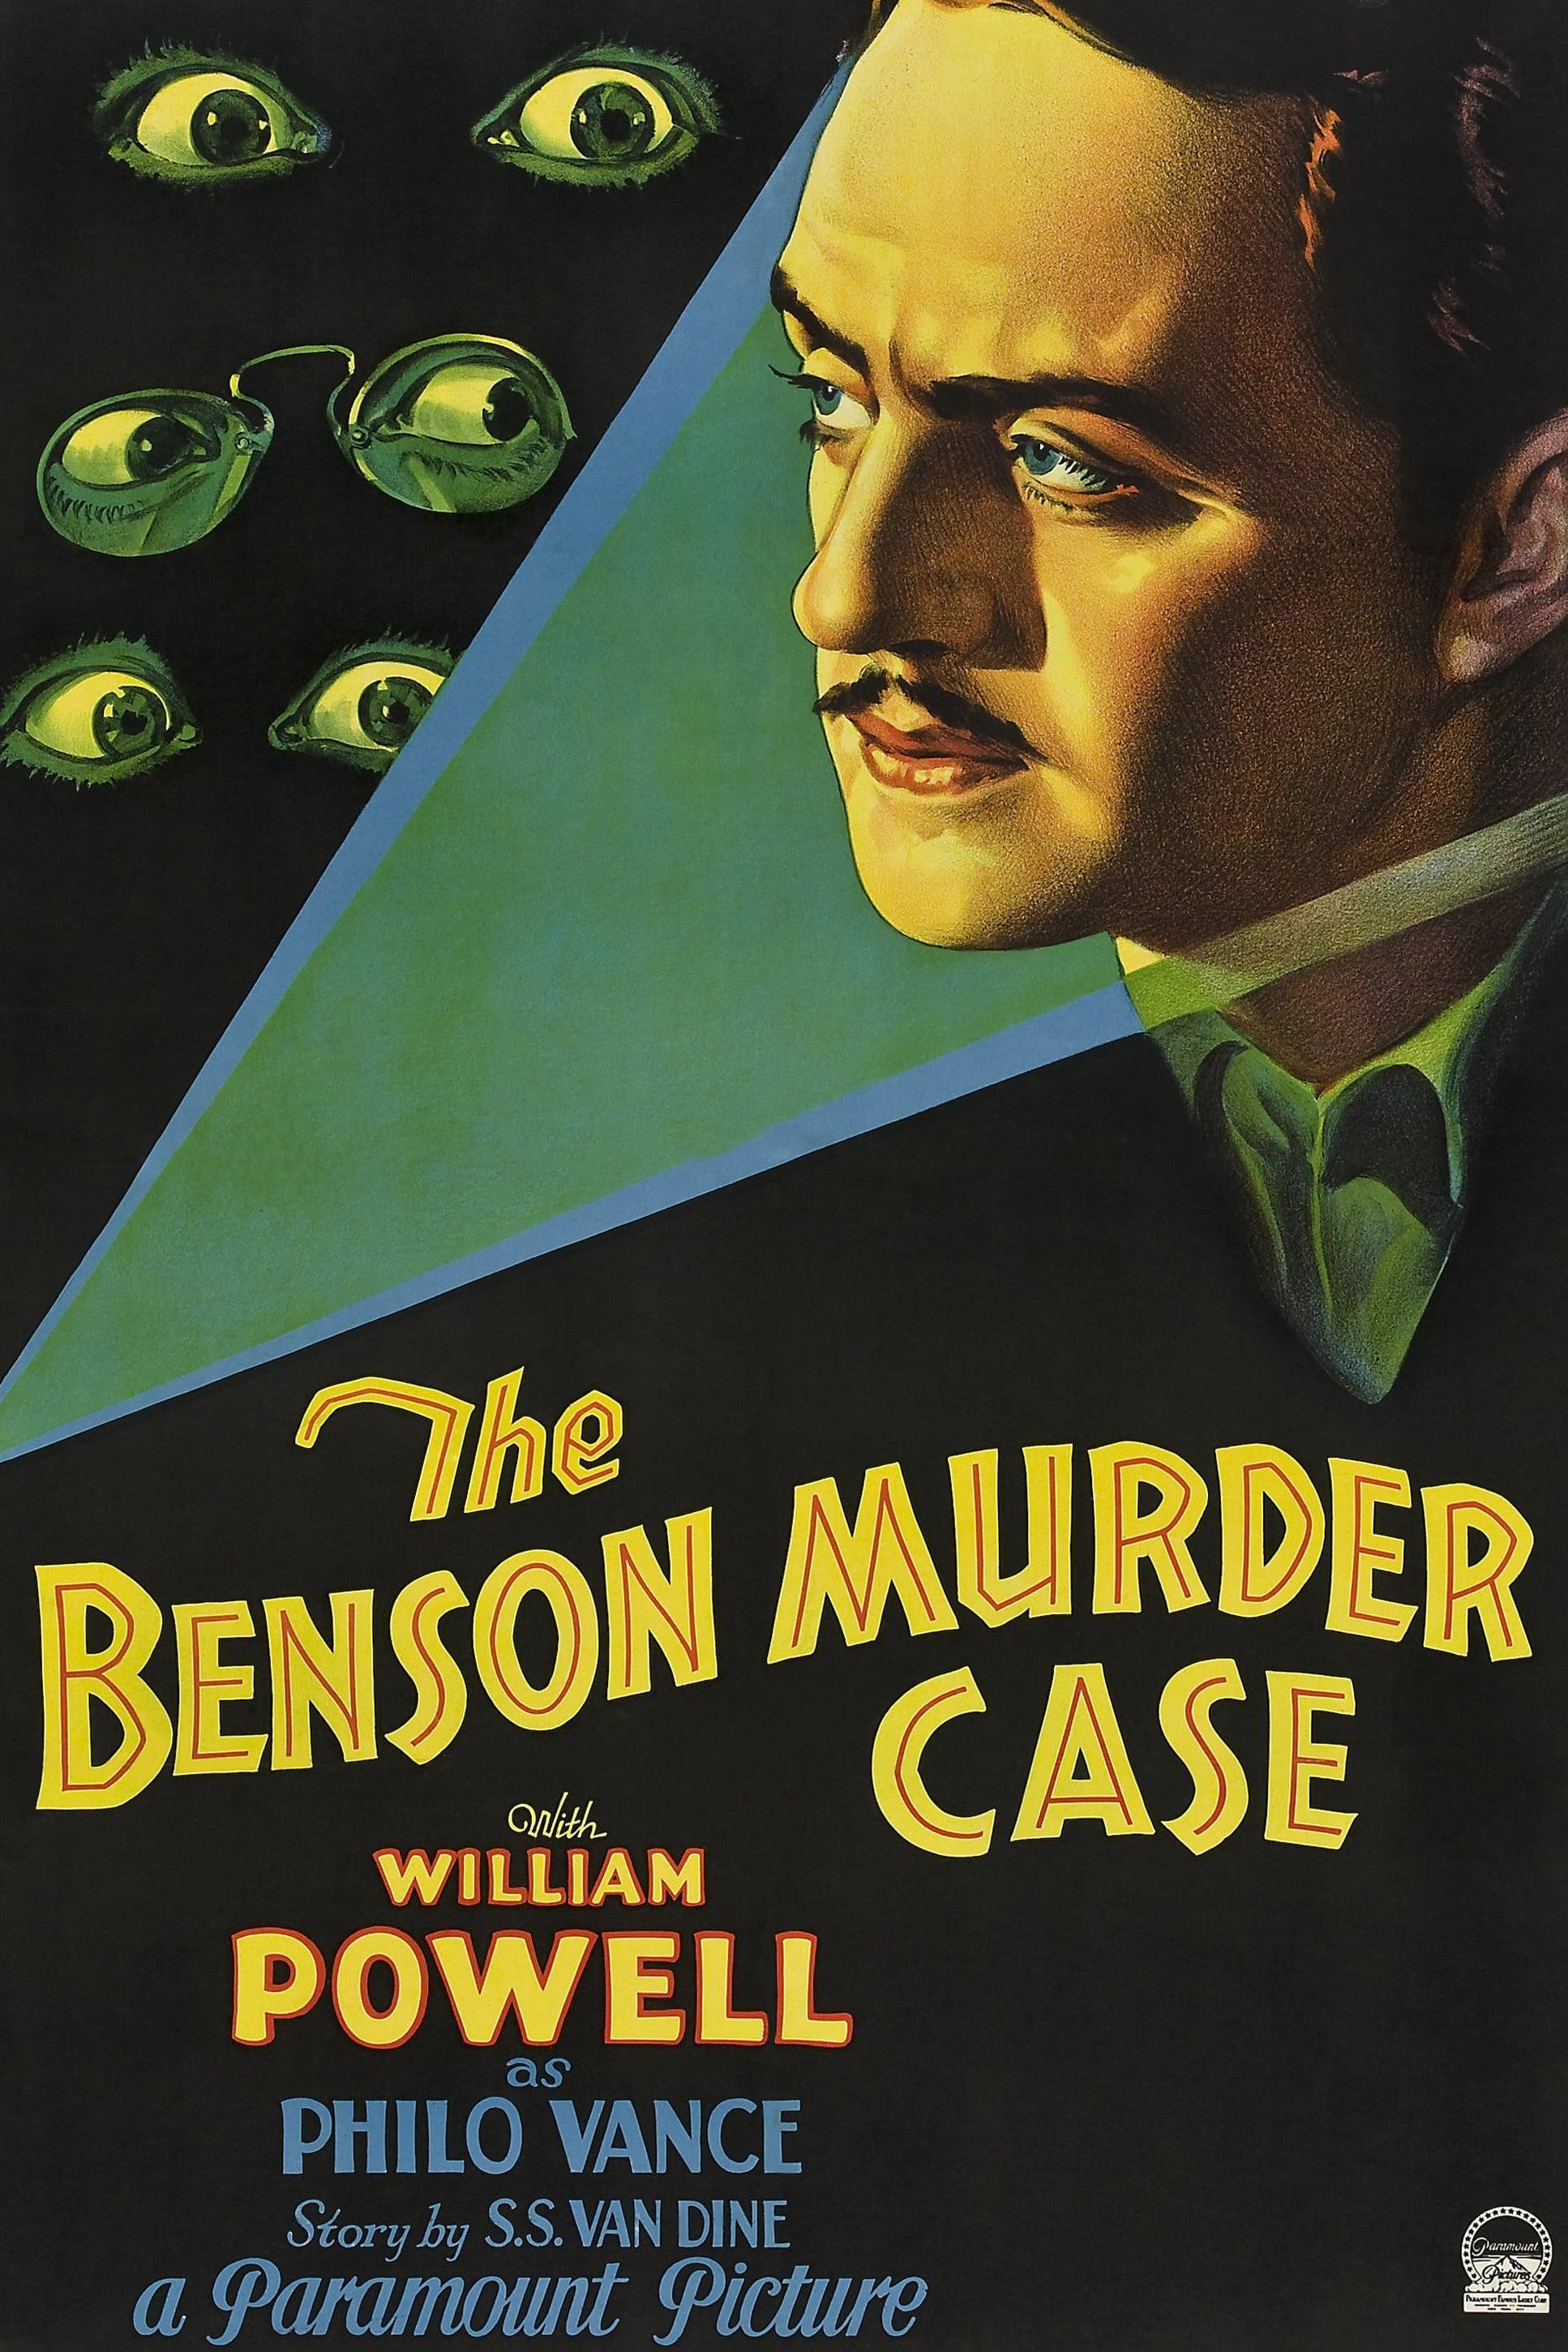 The Benson Murder Case poster